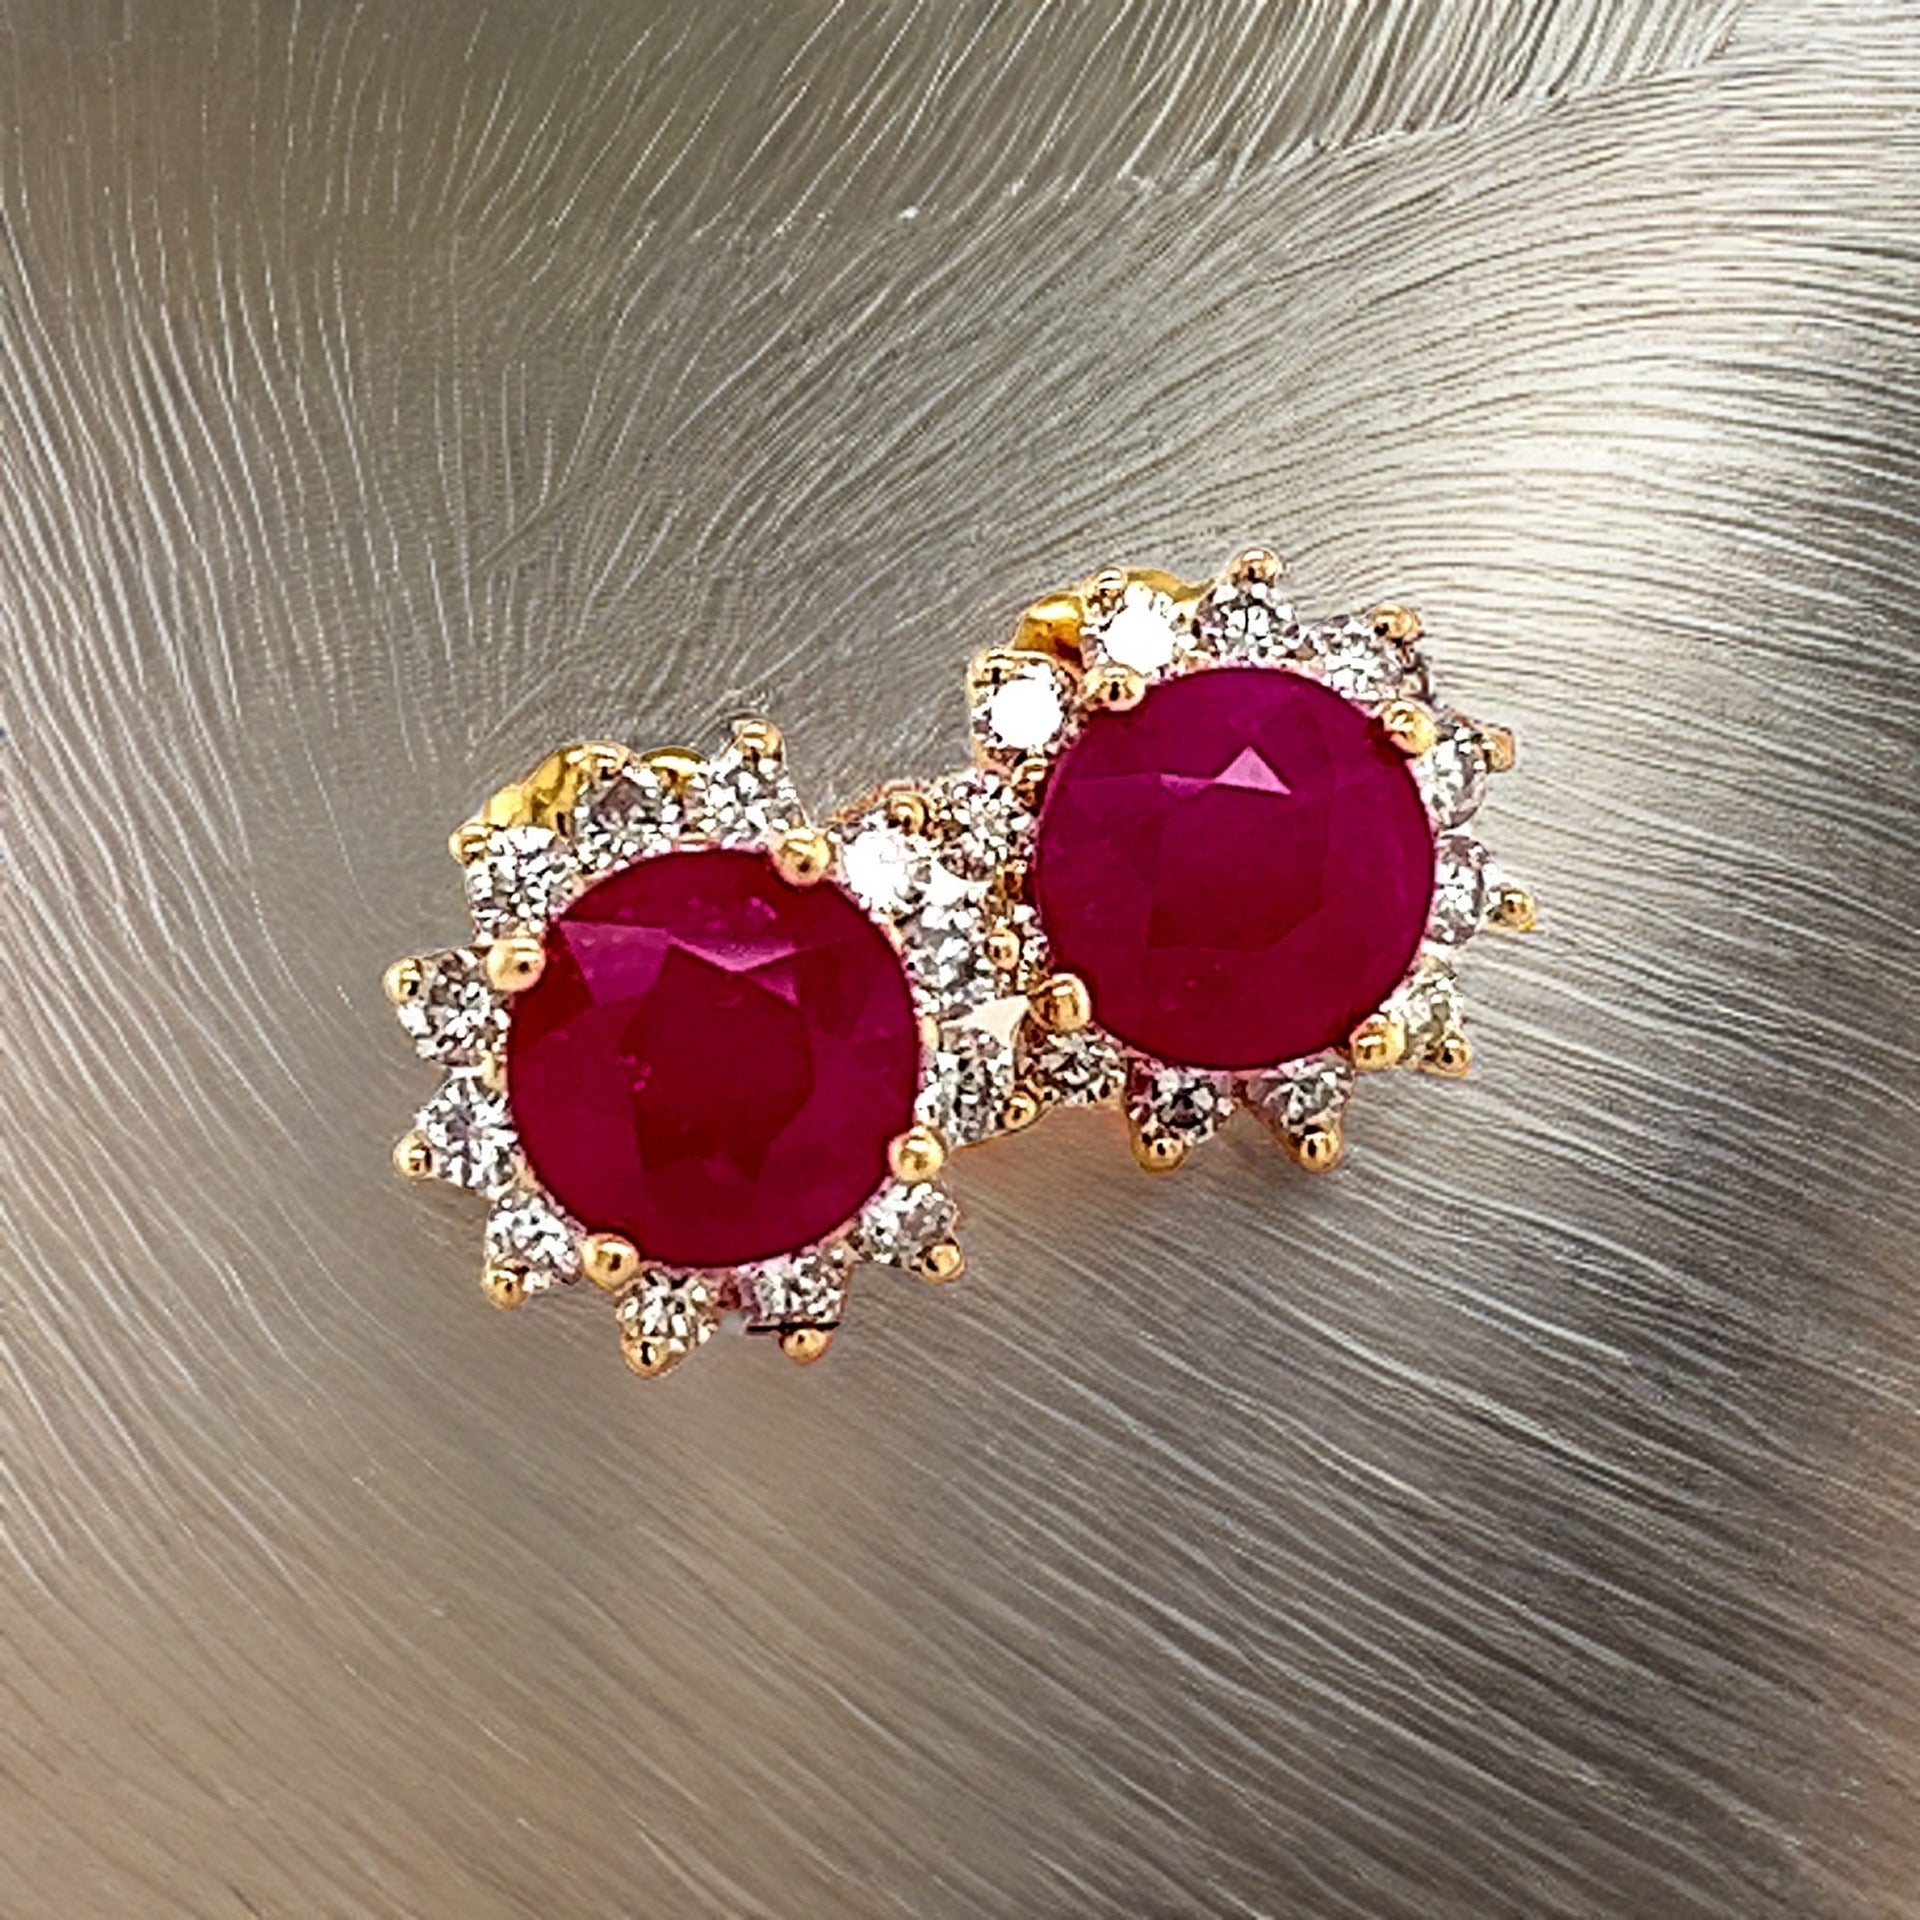 Natural Ruby Diamond Earrings 14k Gold 3.72 TCW Certified $5,950 211346 - Certified Fine Jewelry